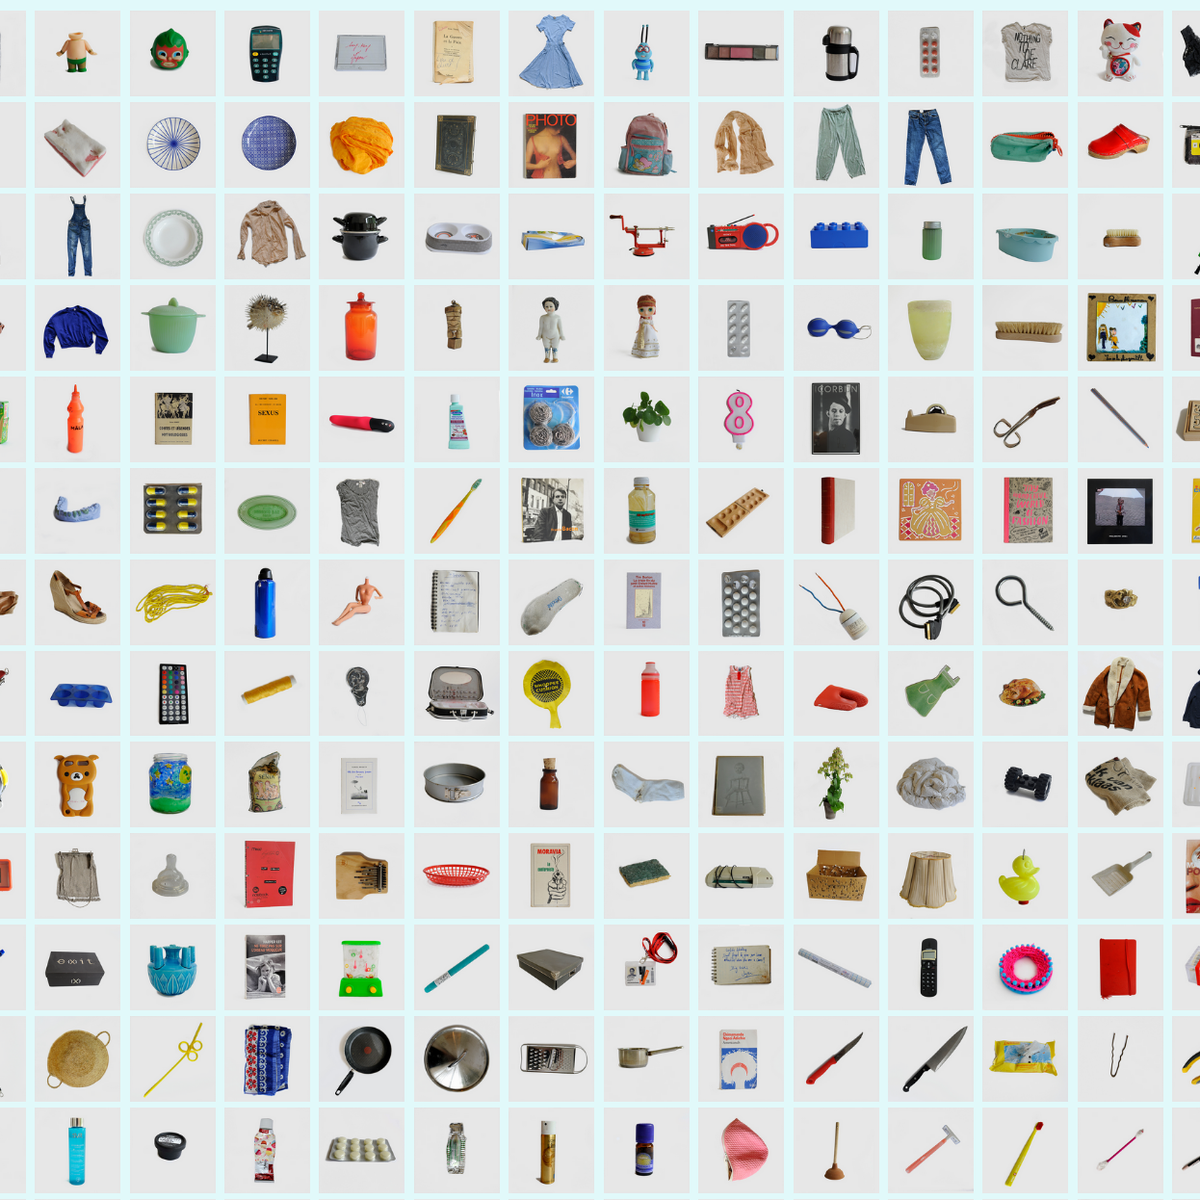 Katalog, l'impresa (epica) di Barbara Iweins che ha fotografato 10,532  oggetti di casa